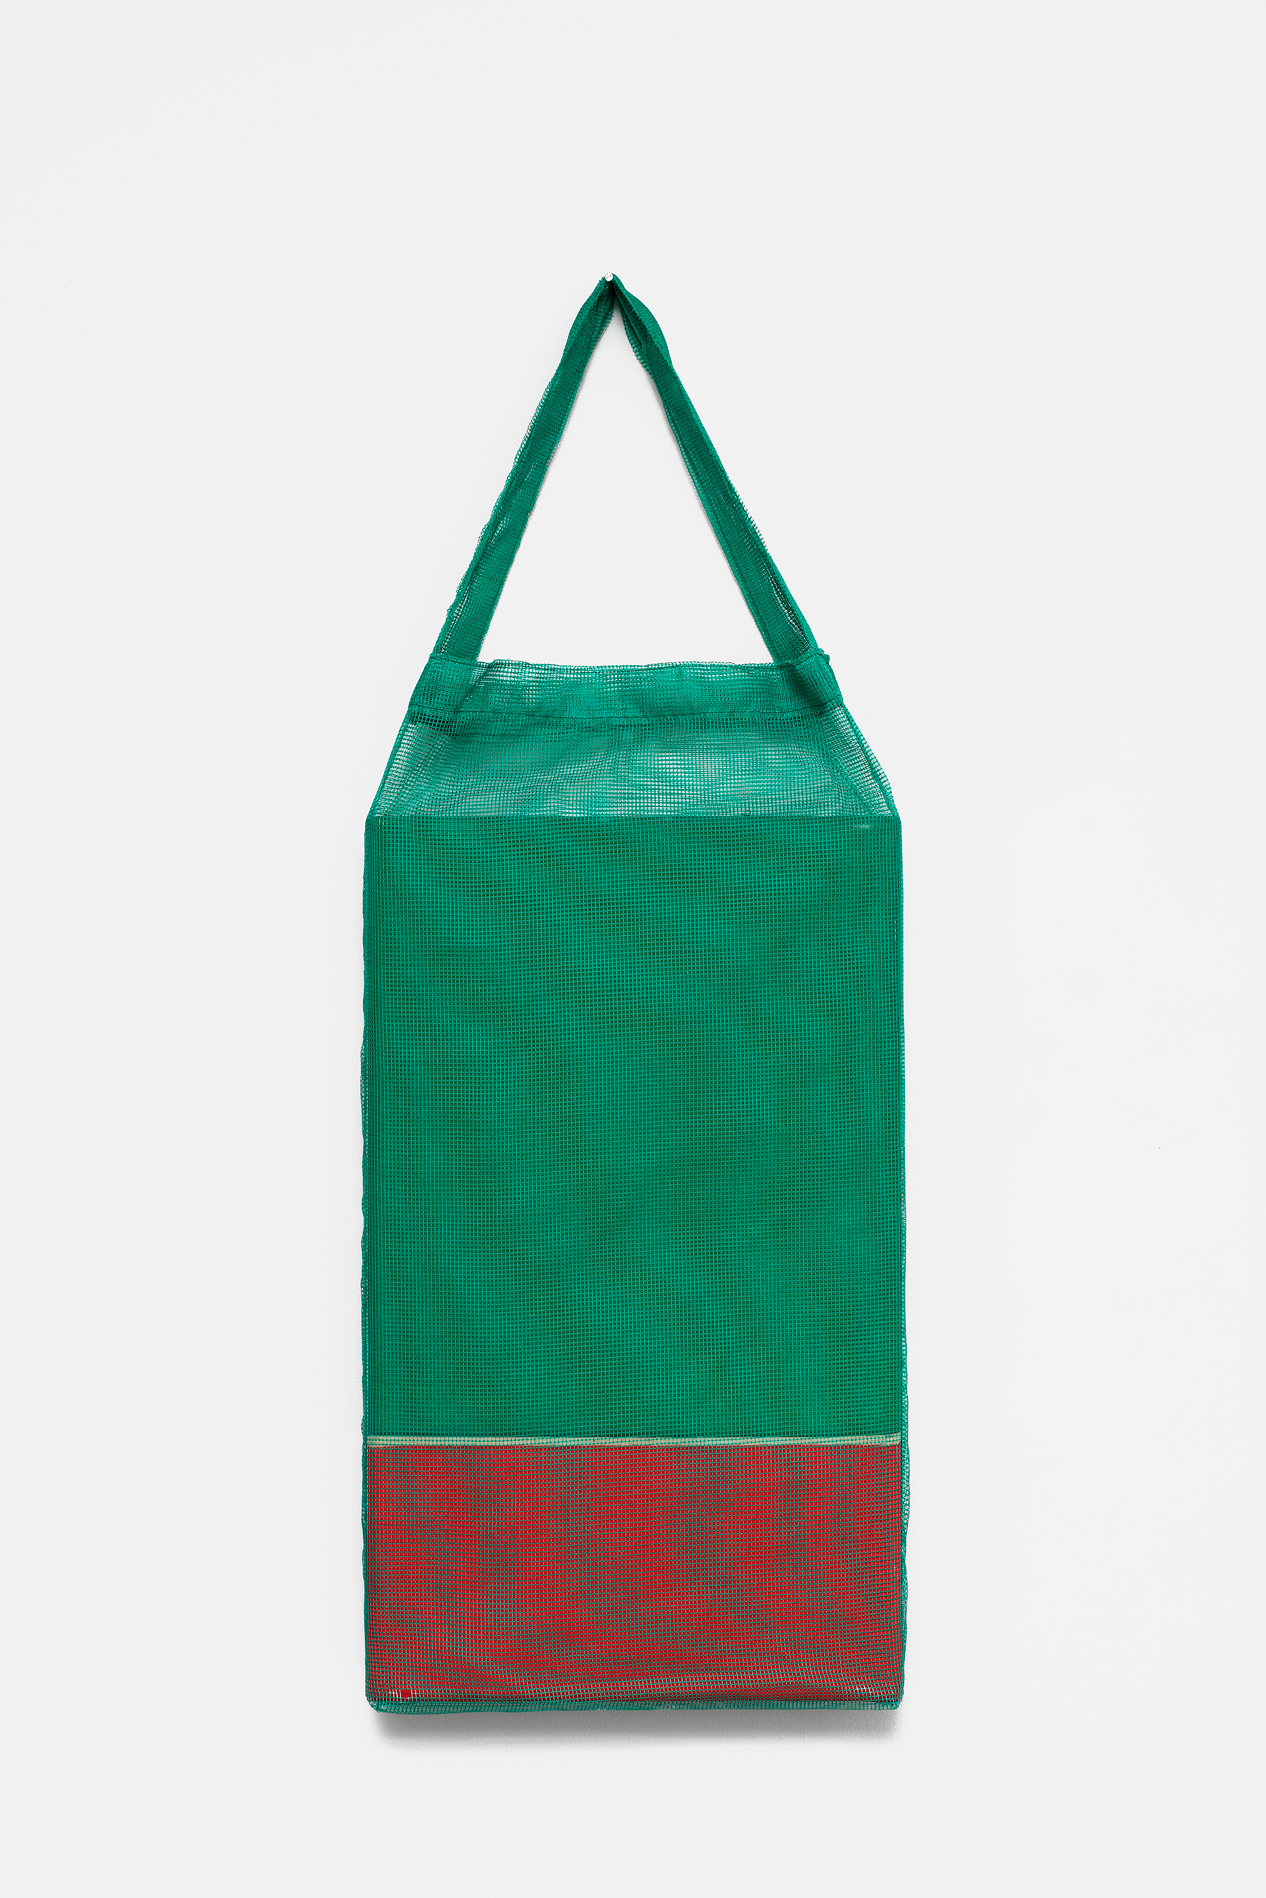 , 2018, Pigments on cotton fabric [batik] and bag, 82 x 30 x 5 cm, , unique artwork, Photo: Aurlien Mole